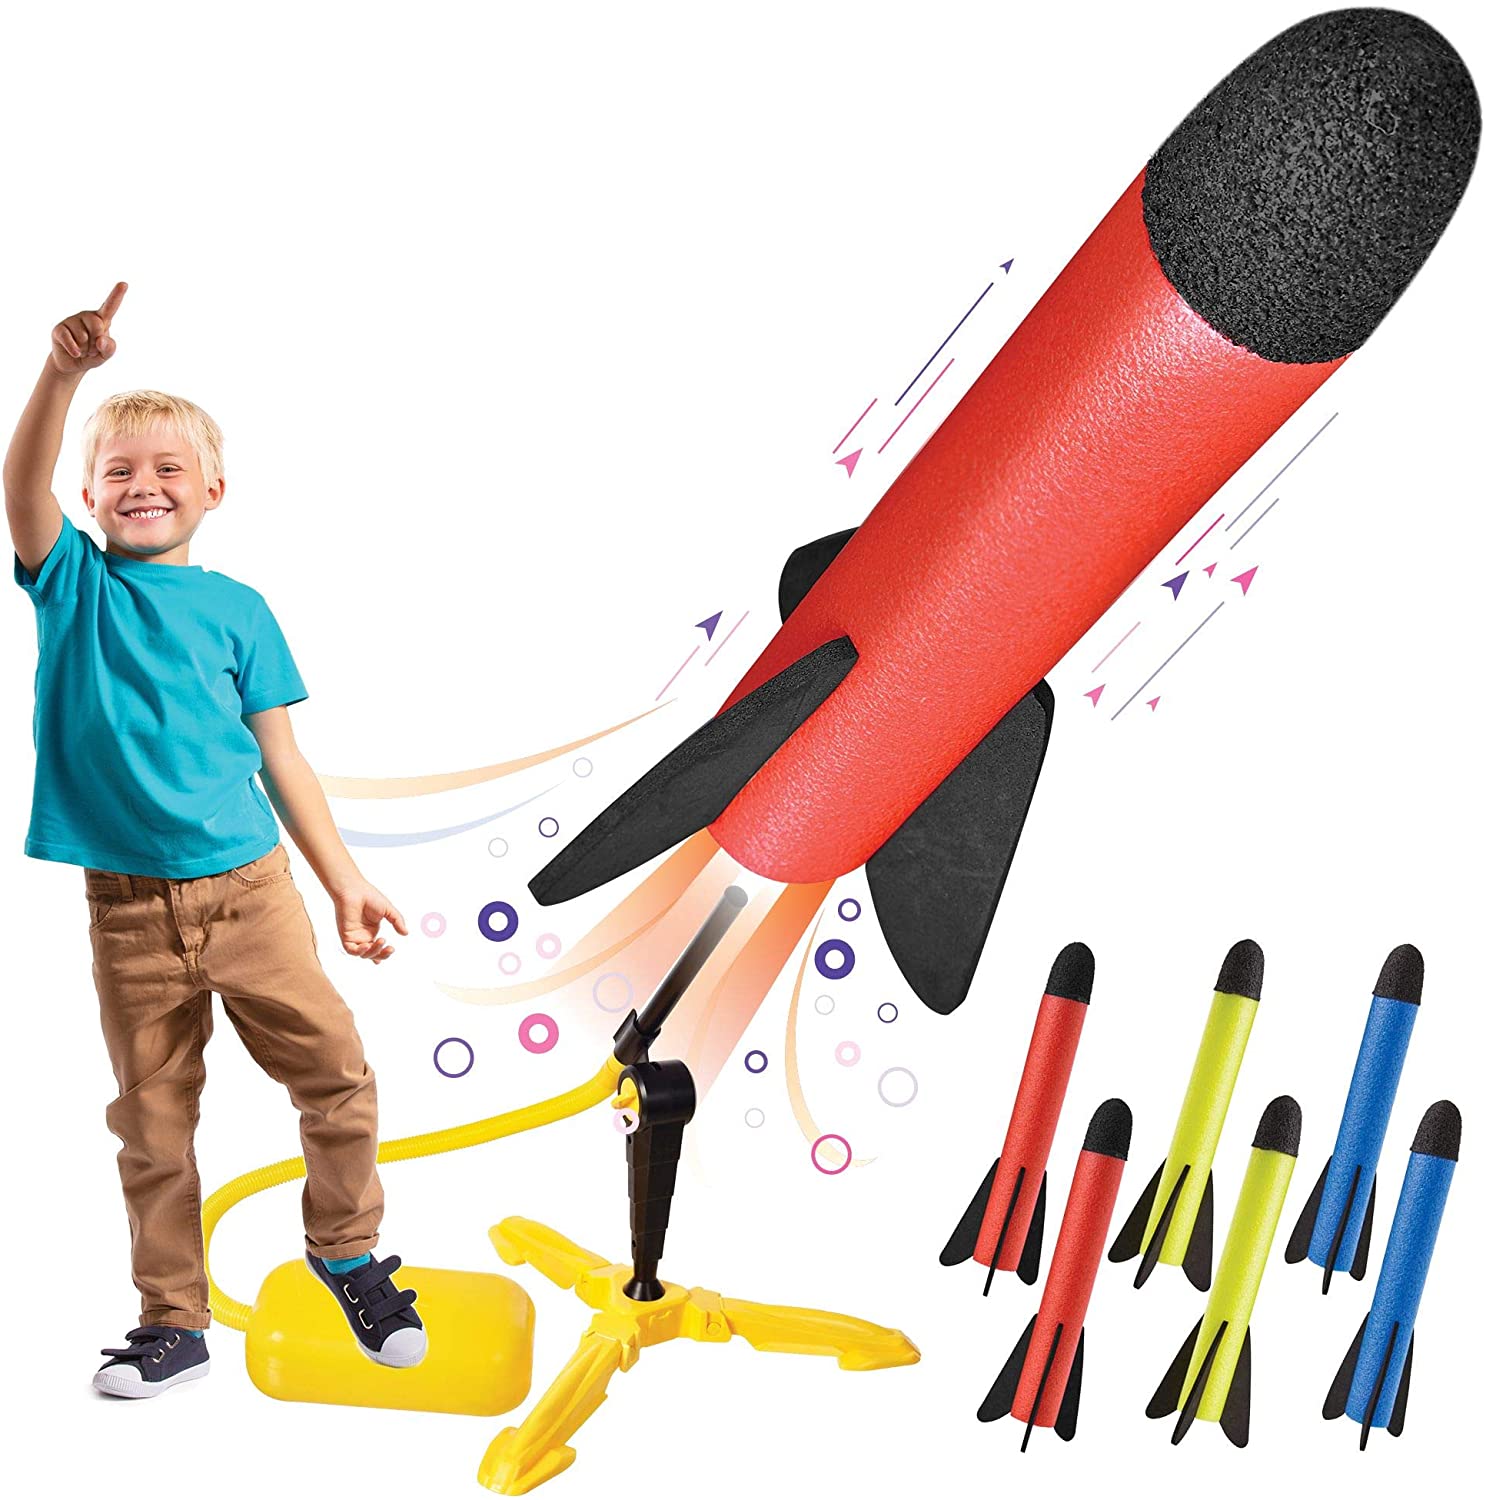 Motoworx Sturdy Foam Toy Rocket Launcher